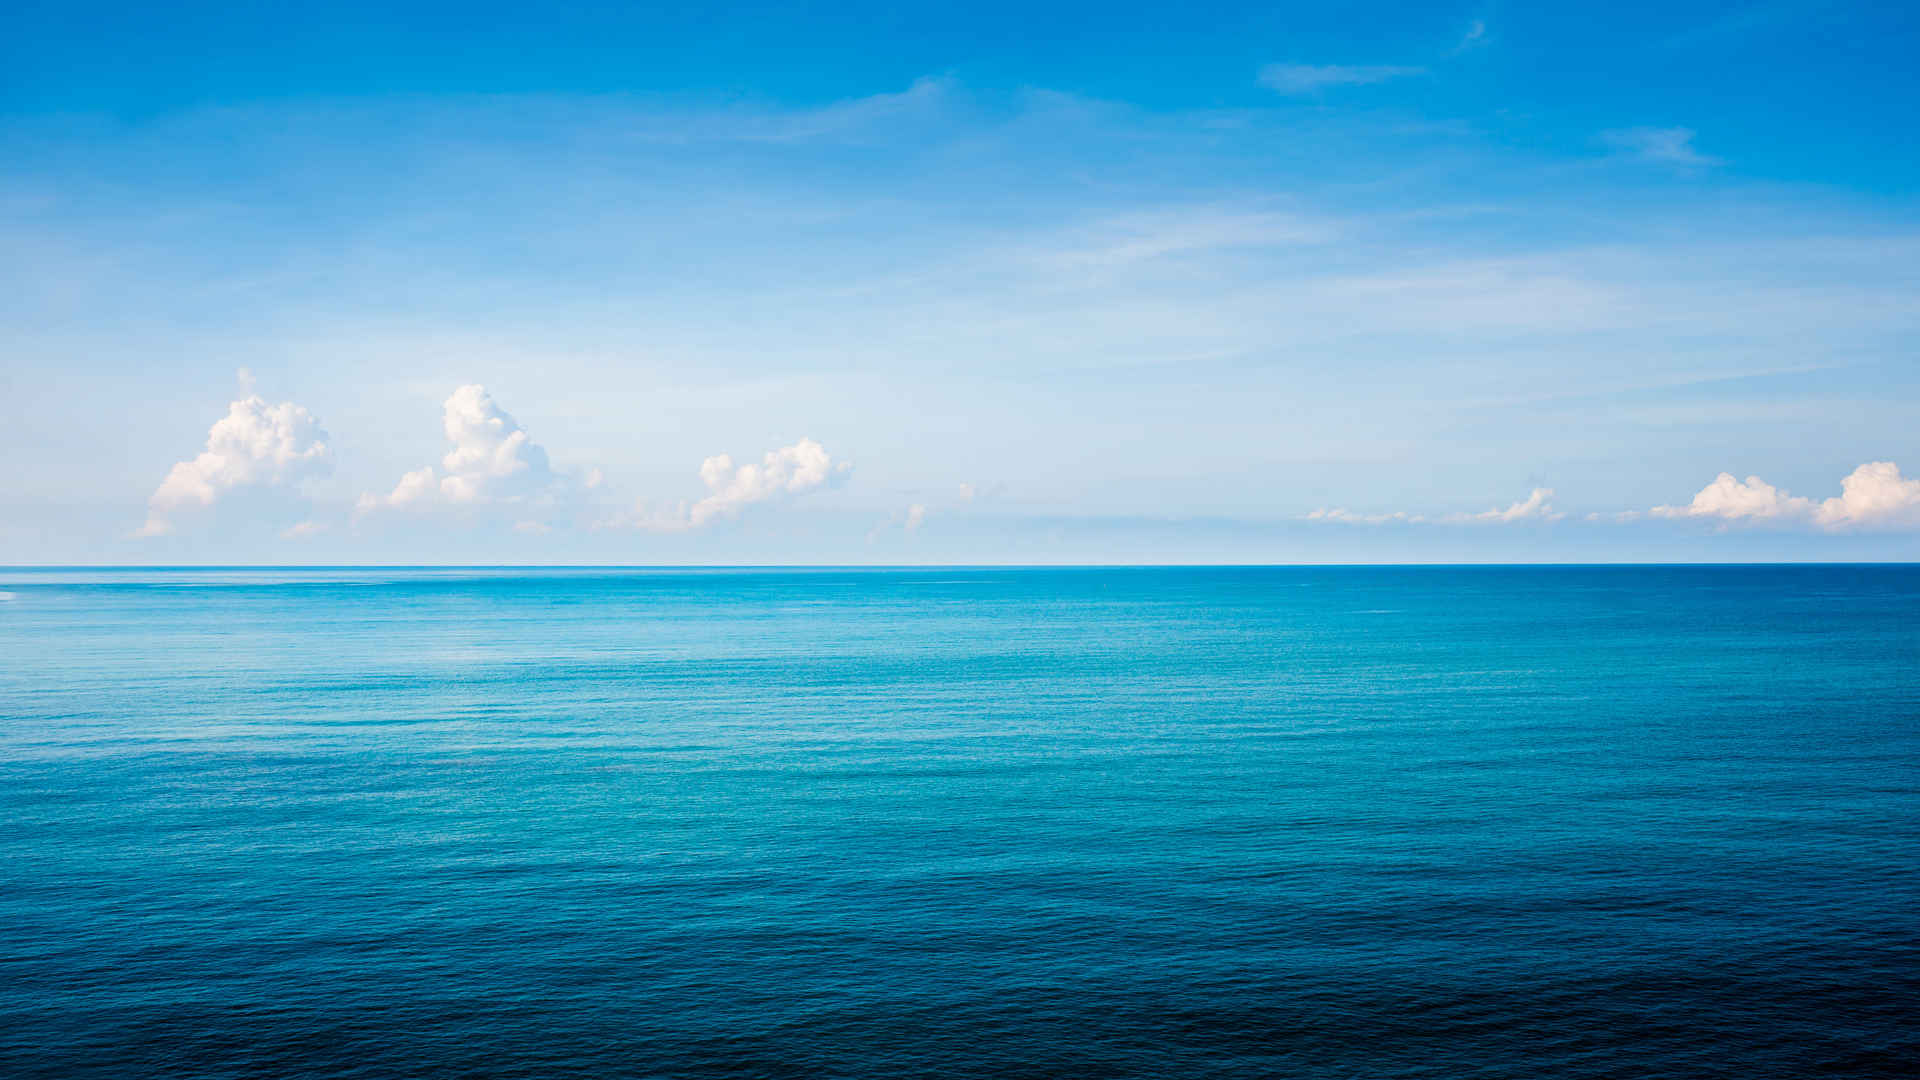 一望无际的大海 碧海蓝天 水天一线 4k风景壁纸-